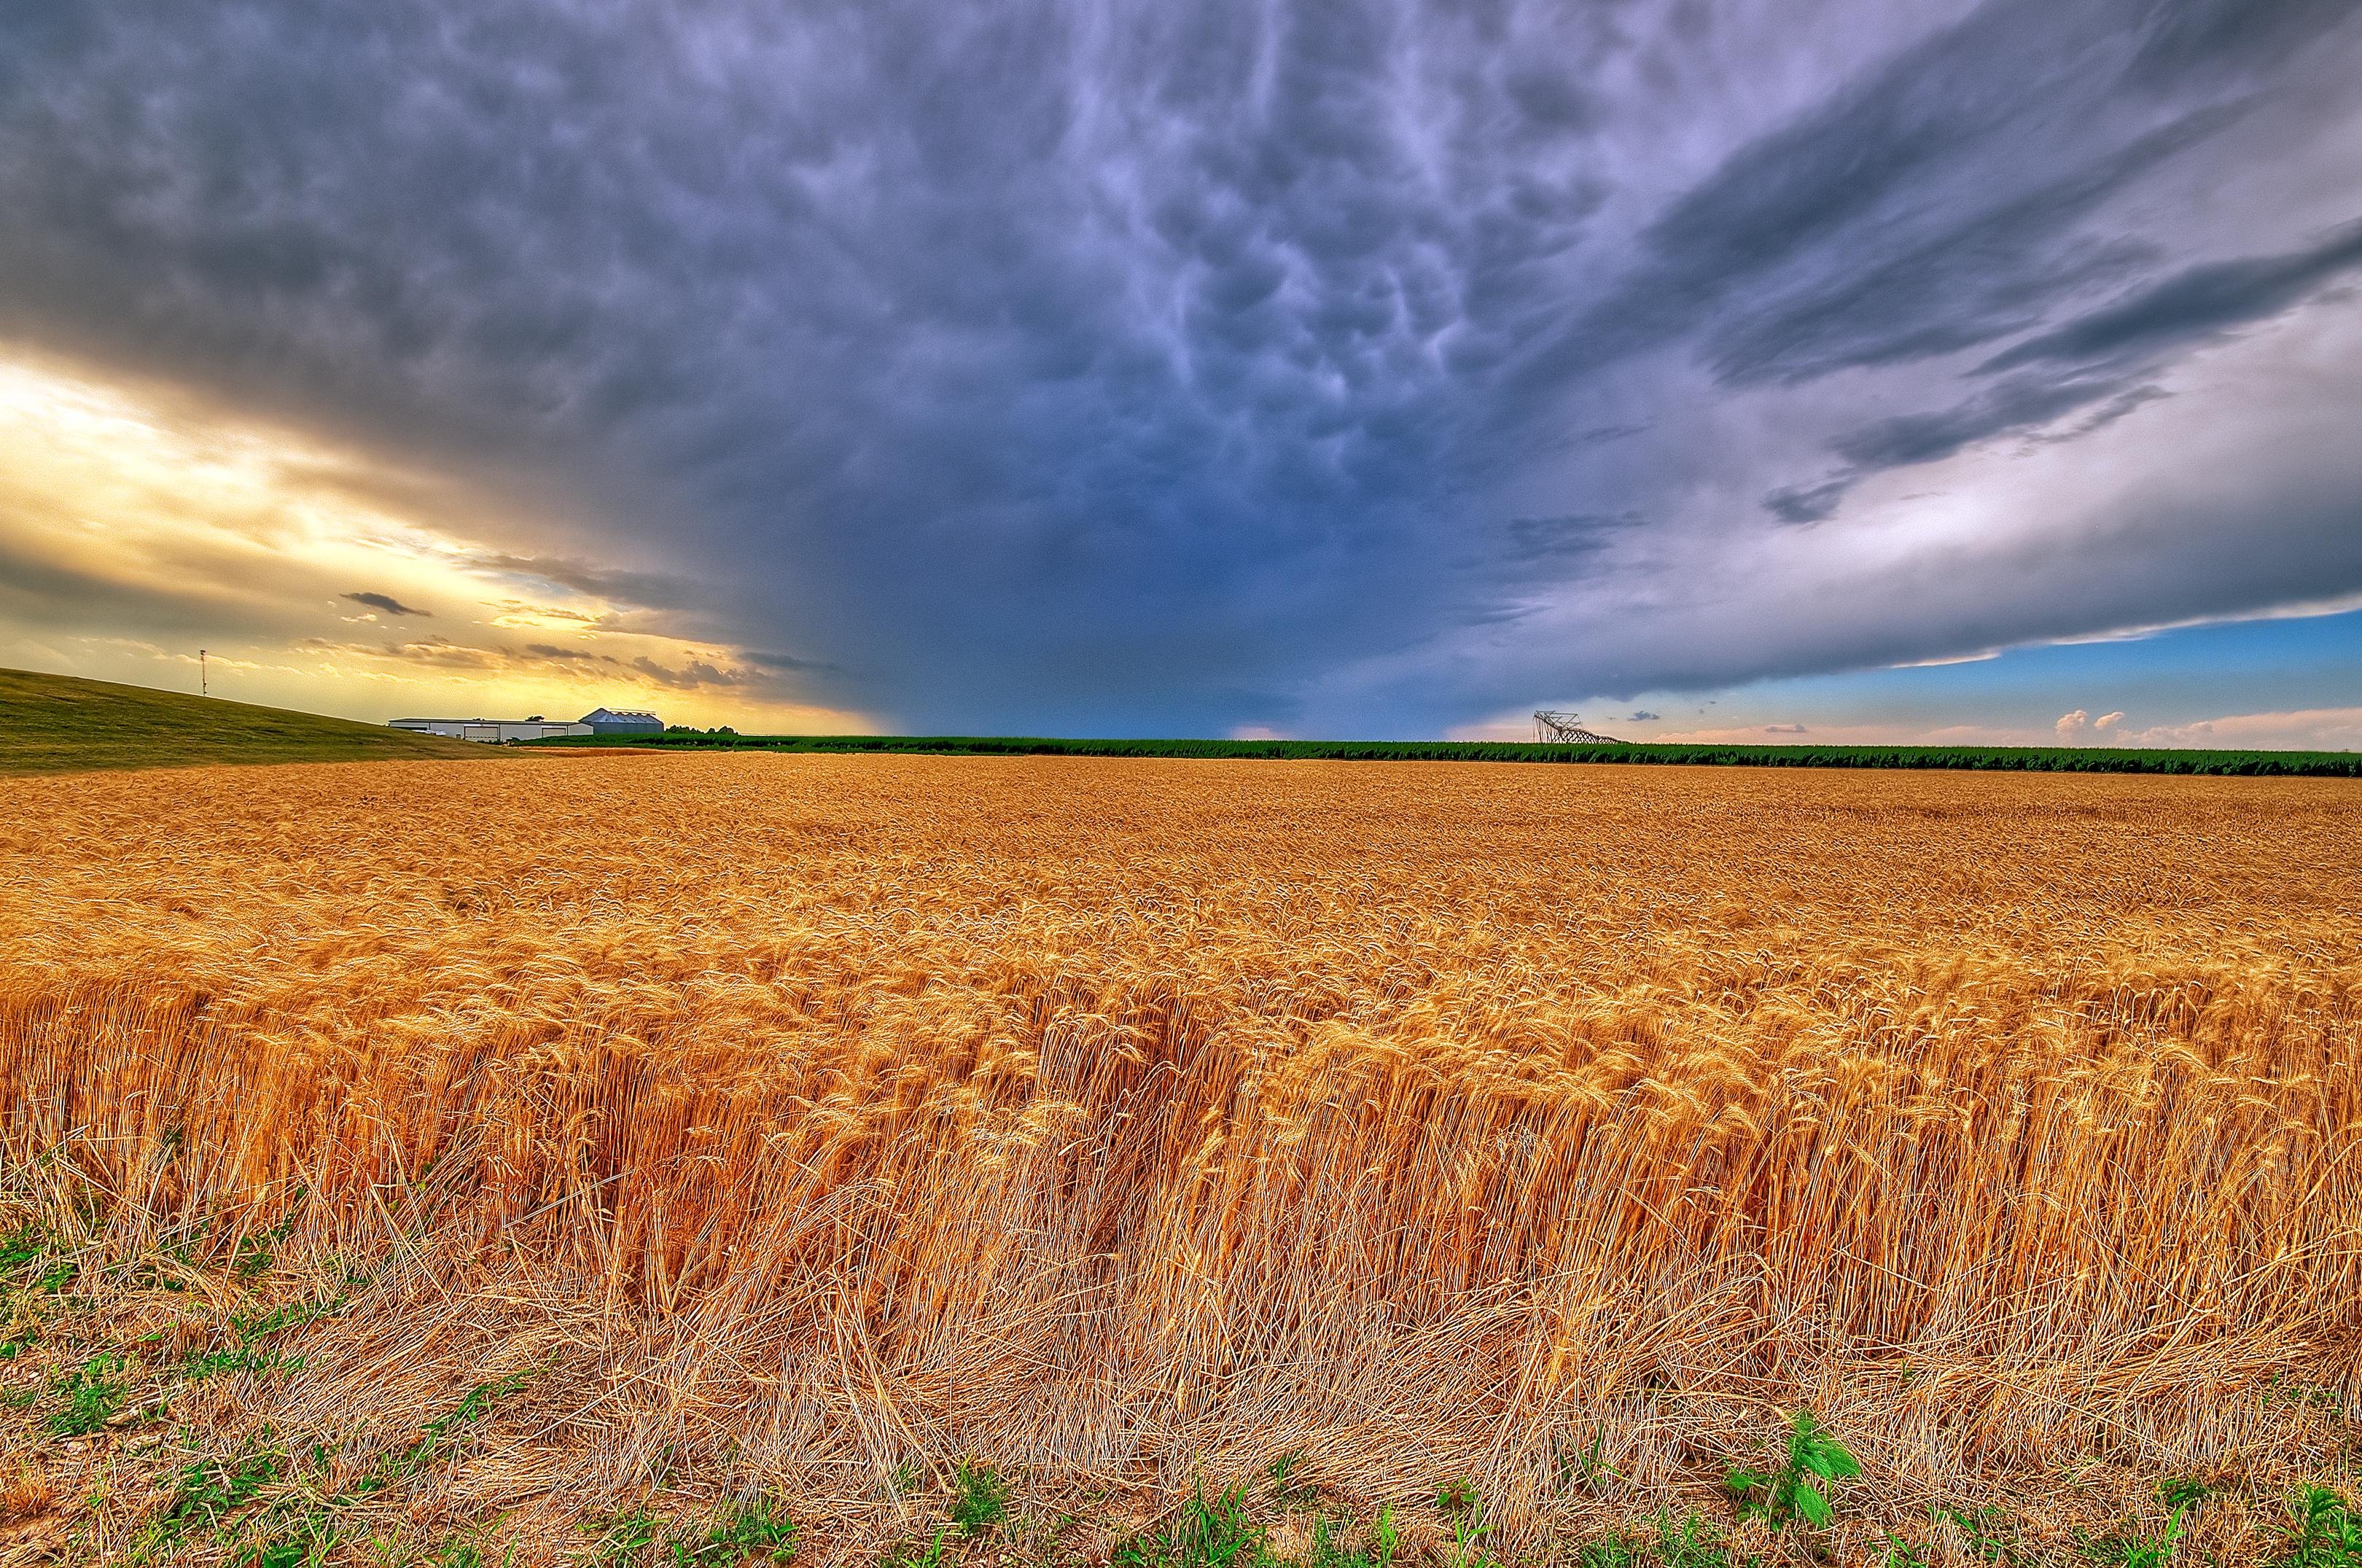 Риче поле. Штат Канзас поля. Пшеничный штат Канзас. Штат Канзас природа. «Пшеничное поле — Противостояние» (Нью-Йорк, США).